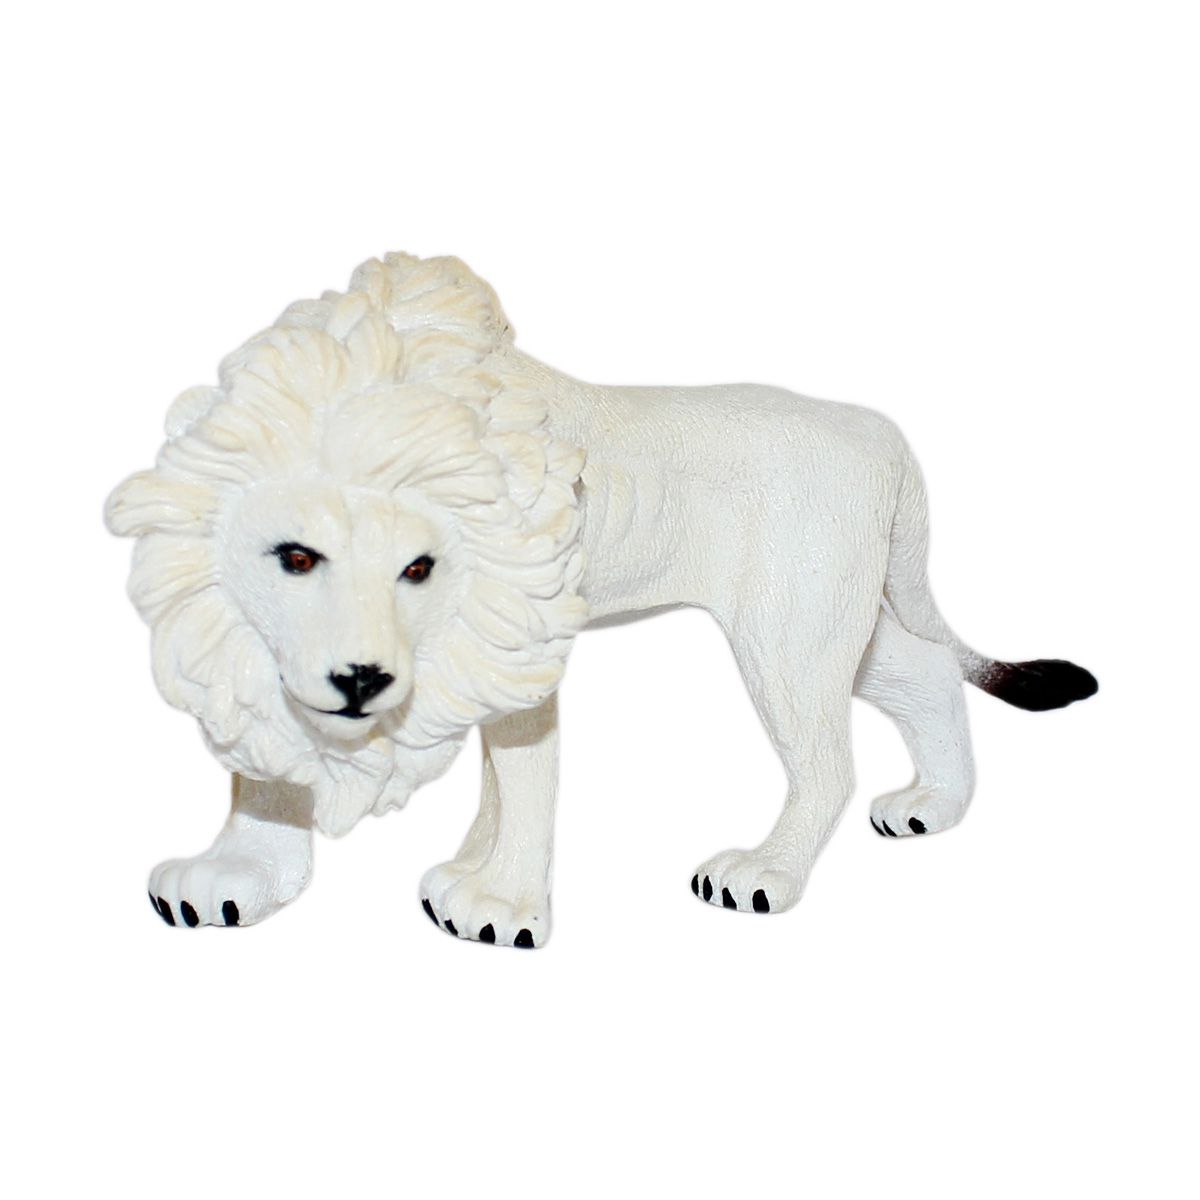 lion toys online